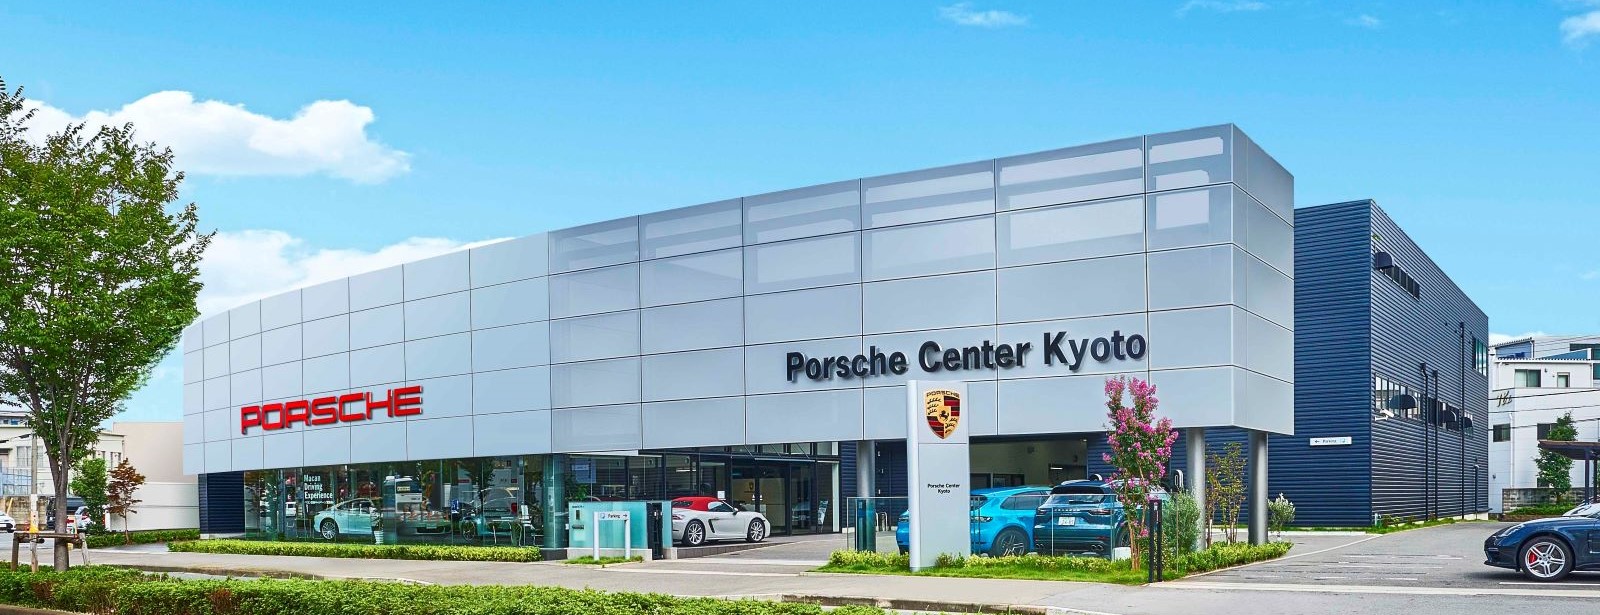 Porsche Center Kyoto.